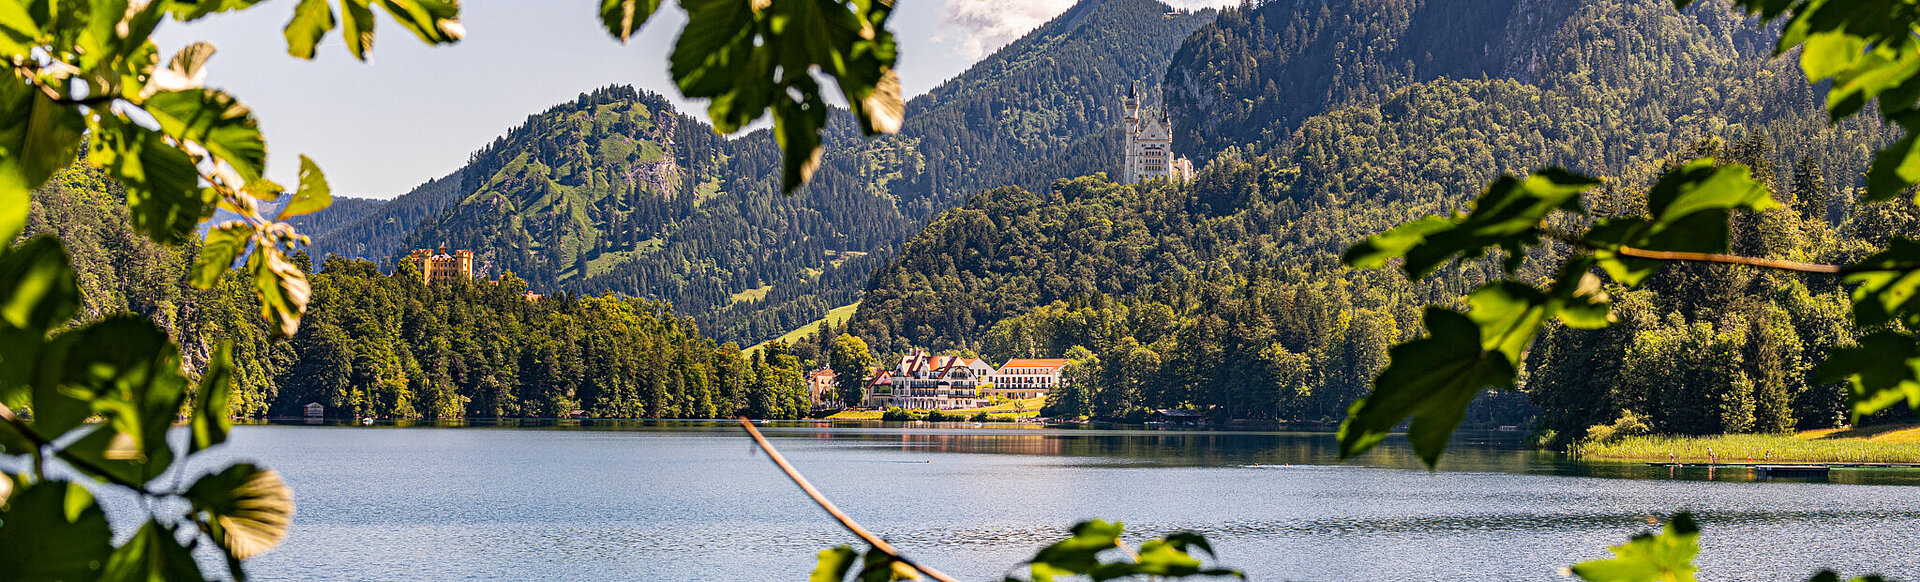 AMERON Neuschwanstein Alpsee Resort & Spa Aussenansicht See